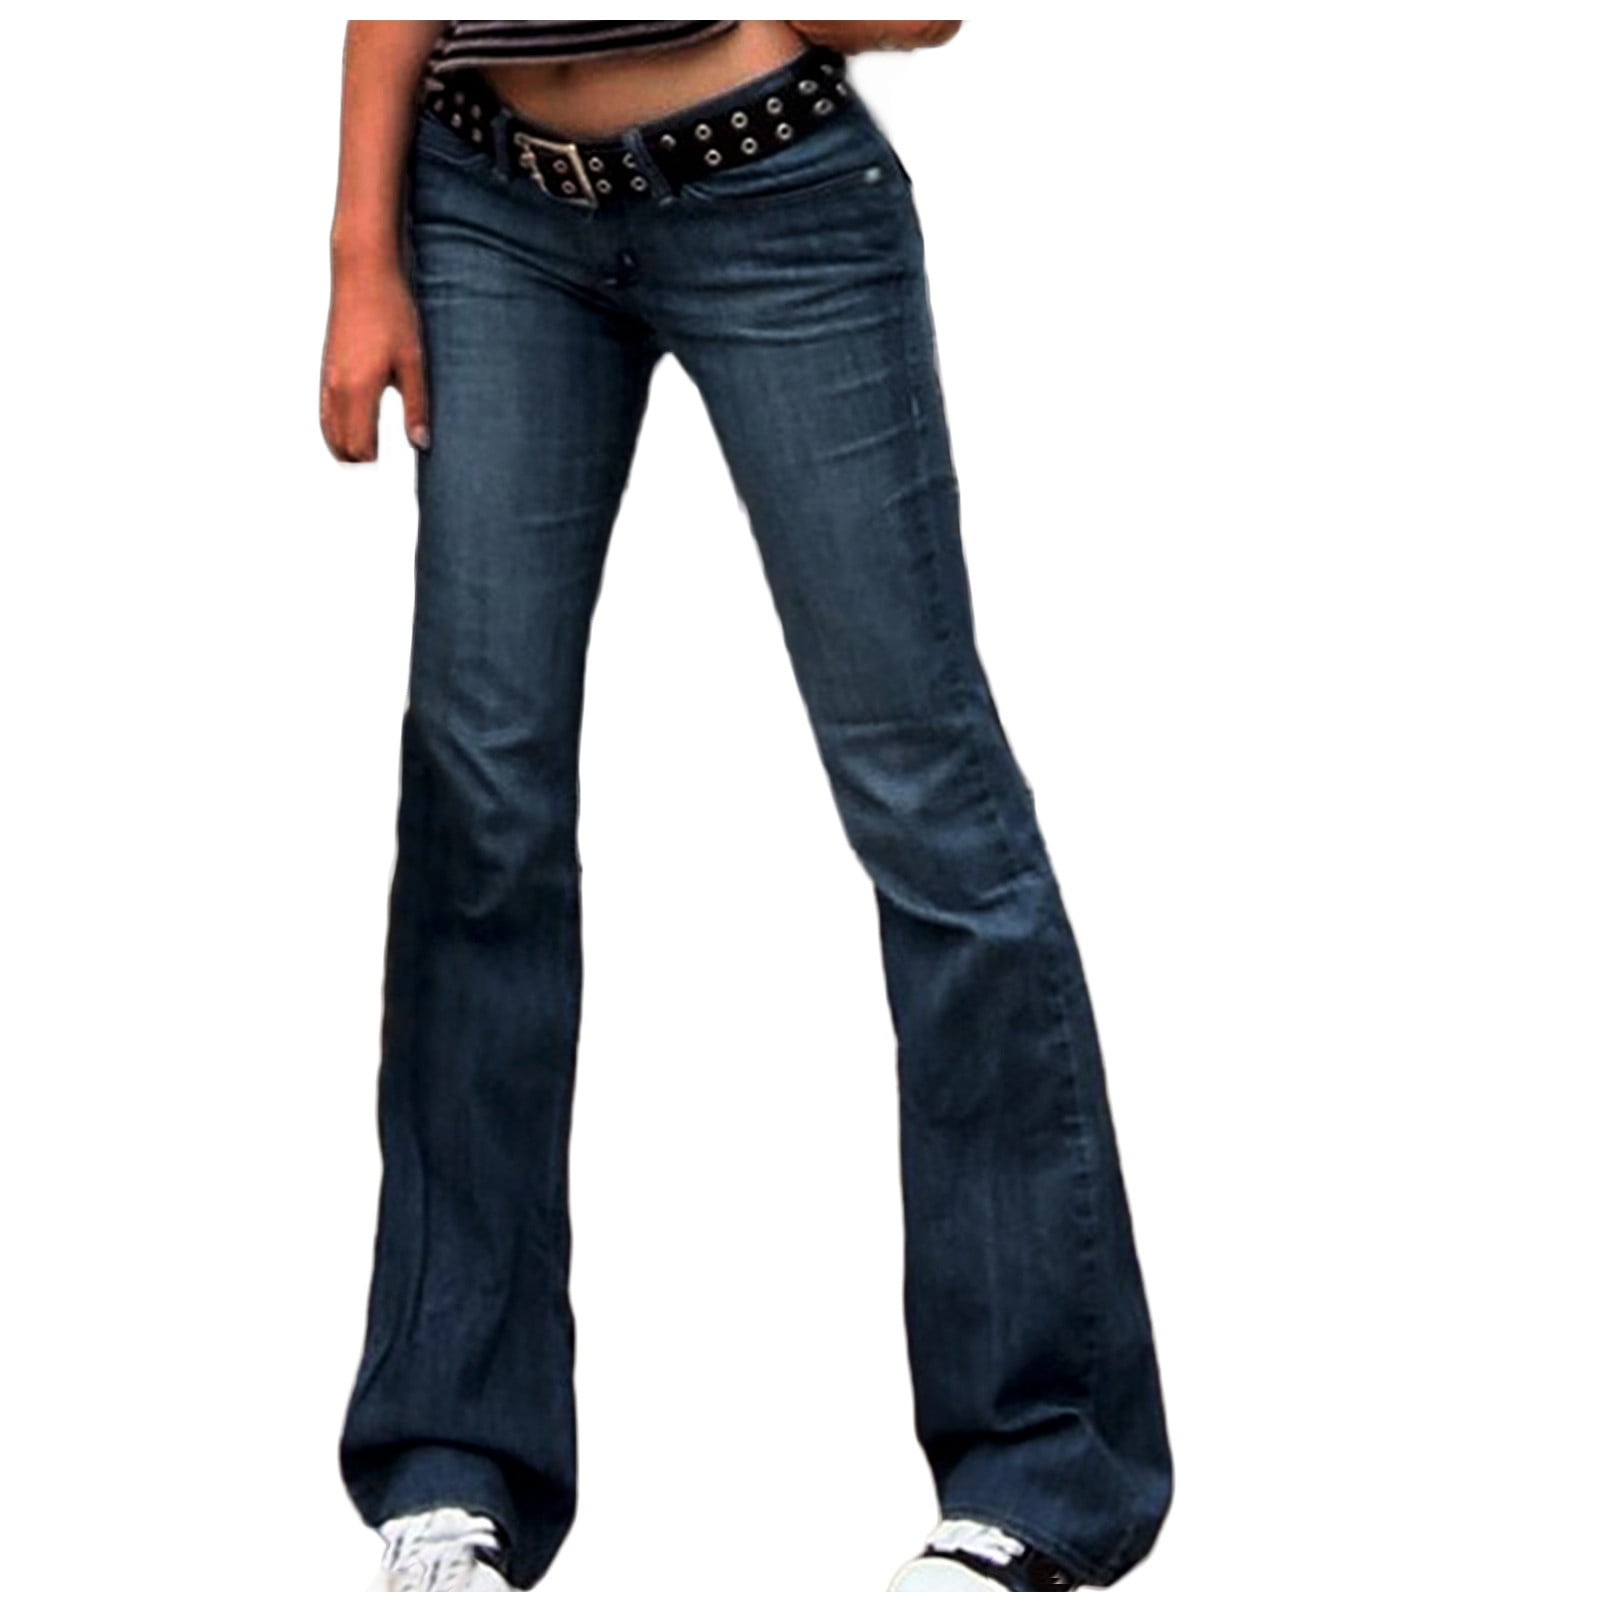 YYDGH Women Ripped Boyfriends Jeans High Waist Baggy Denim Pants